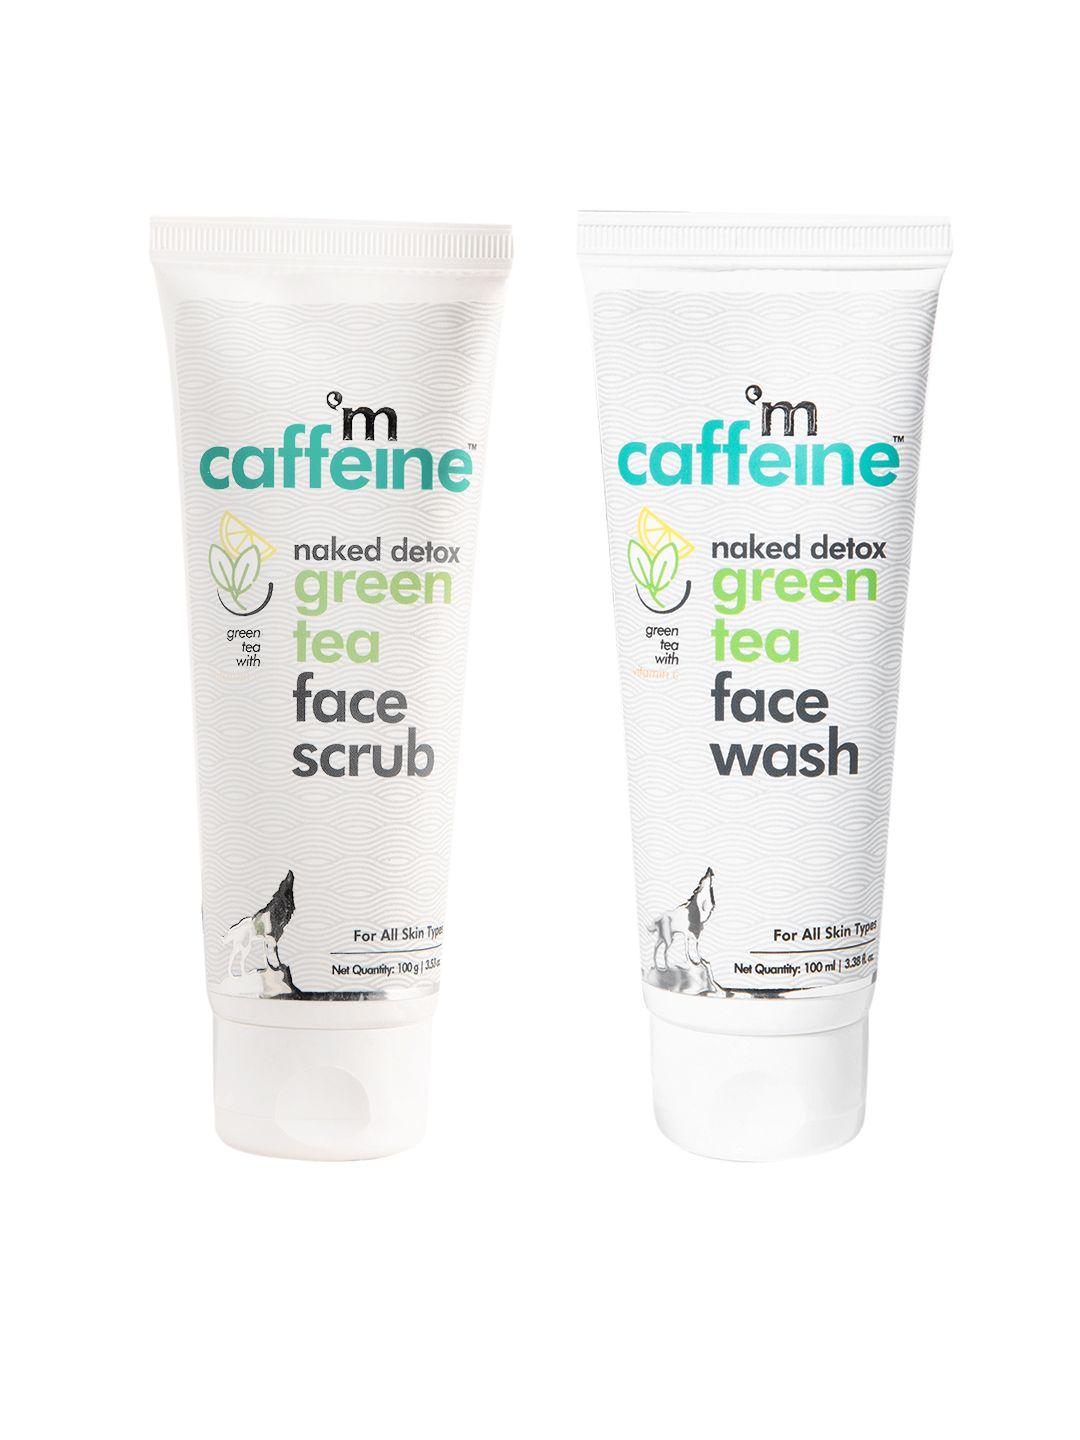 mcaffeine sustainable quick green tea detox kit - set of 2